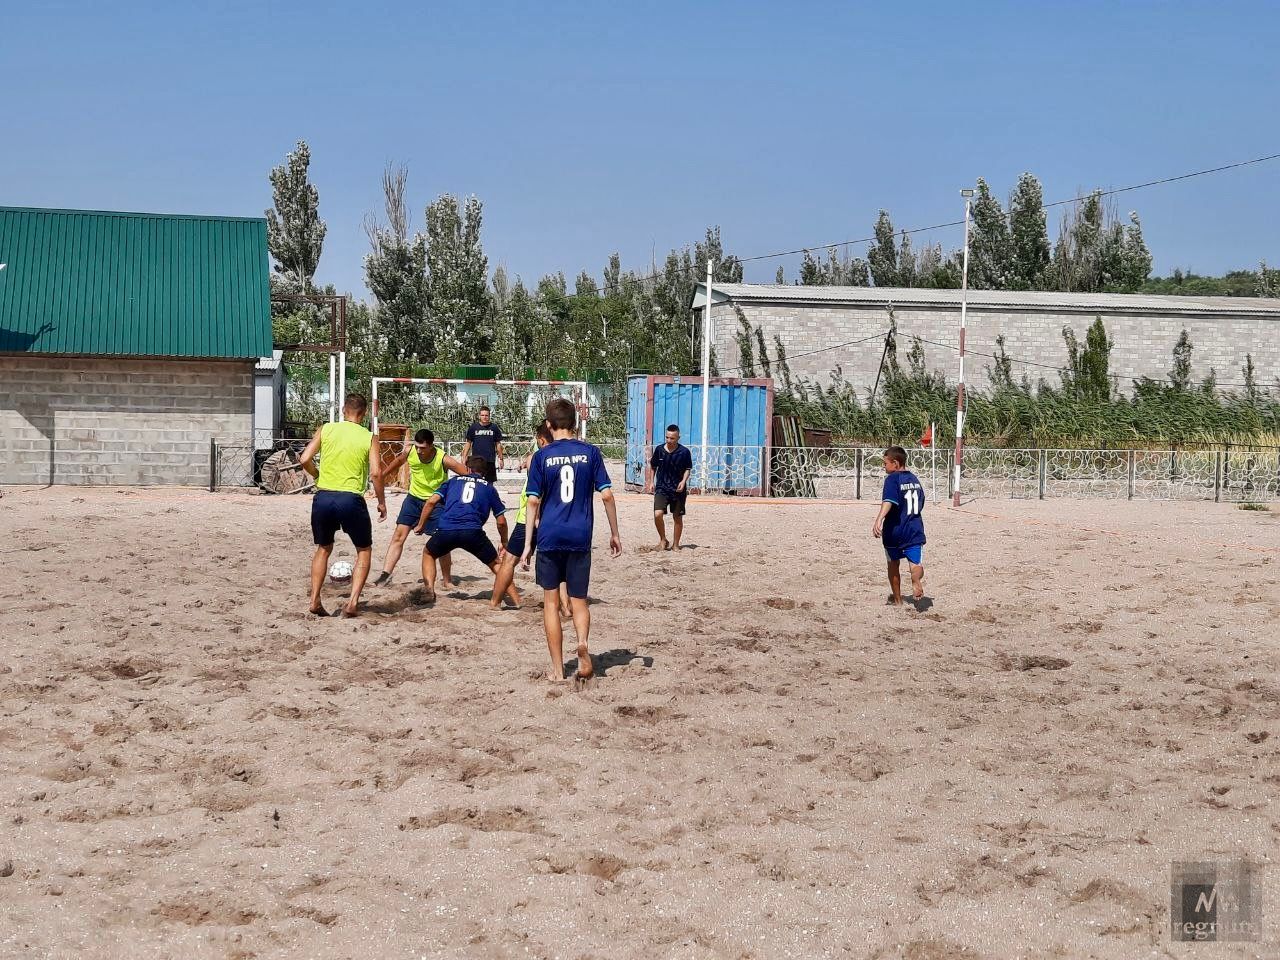 Пляжный футбол. День работников физической культуры и спорта в посёлке Ялта, ДНР.